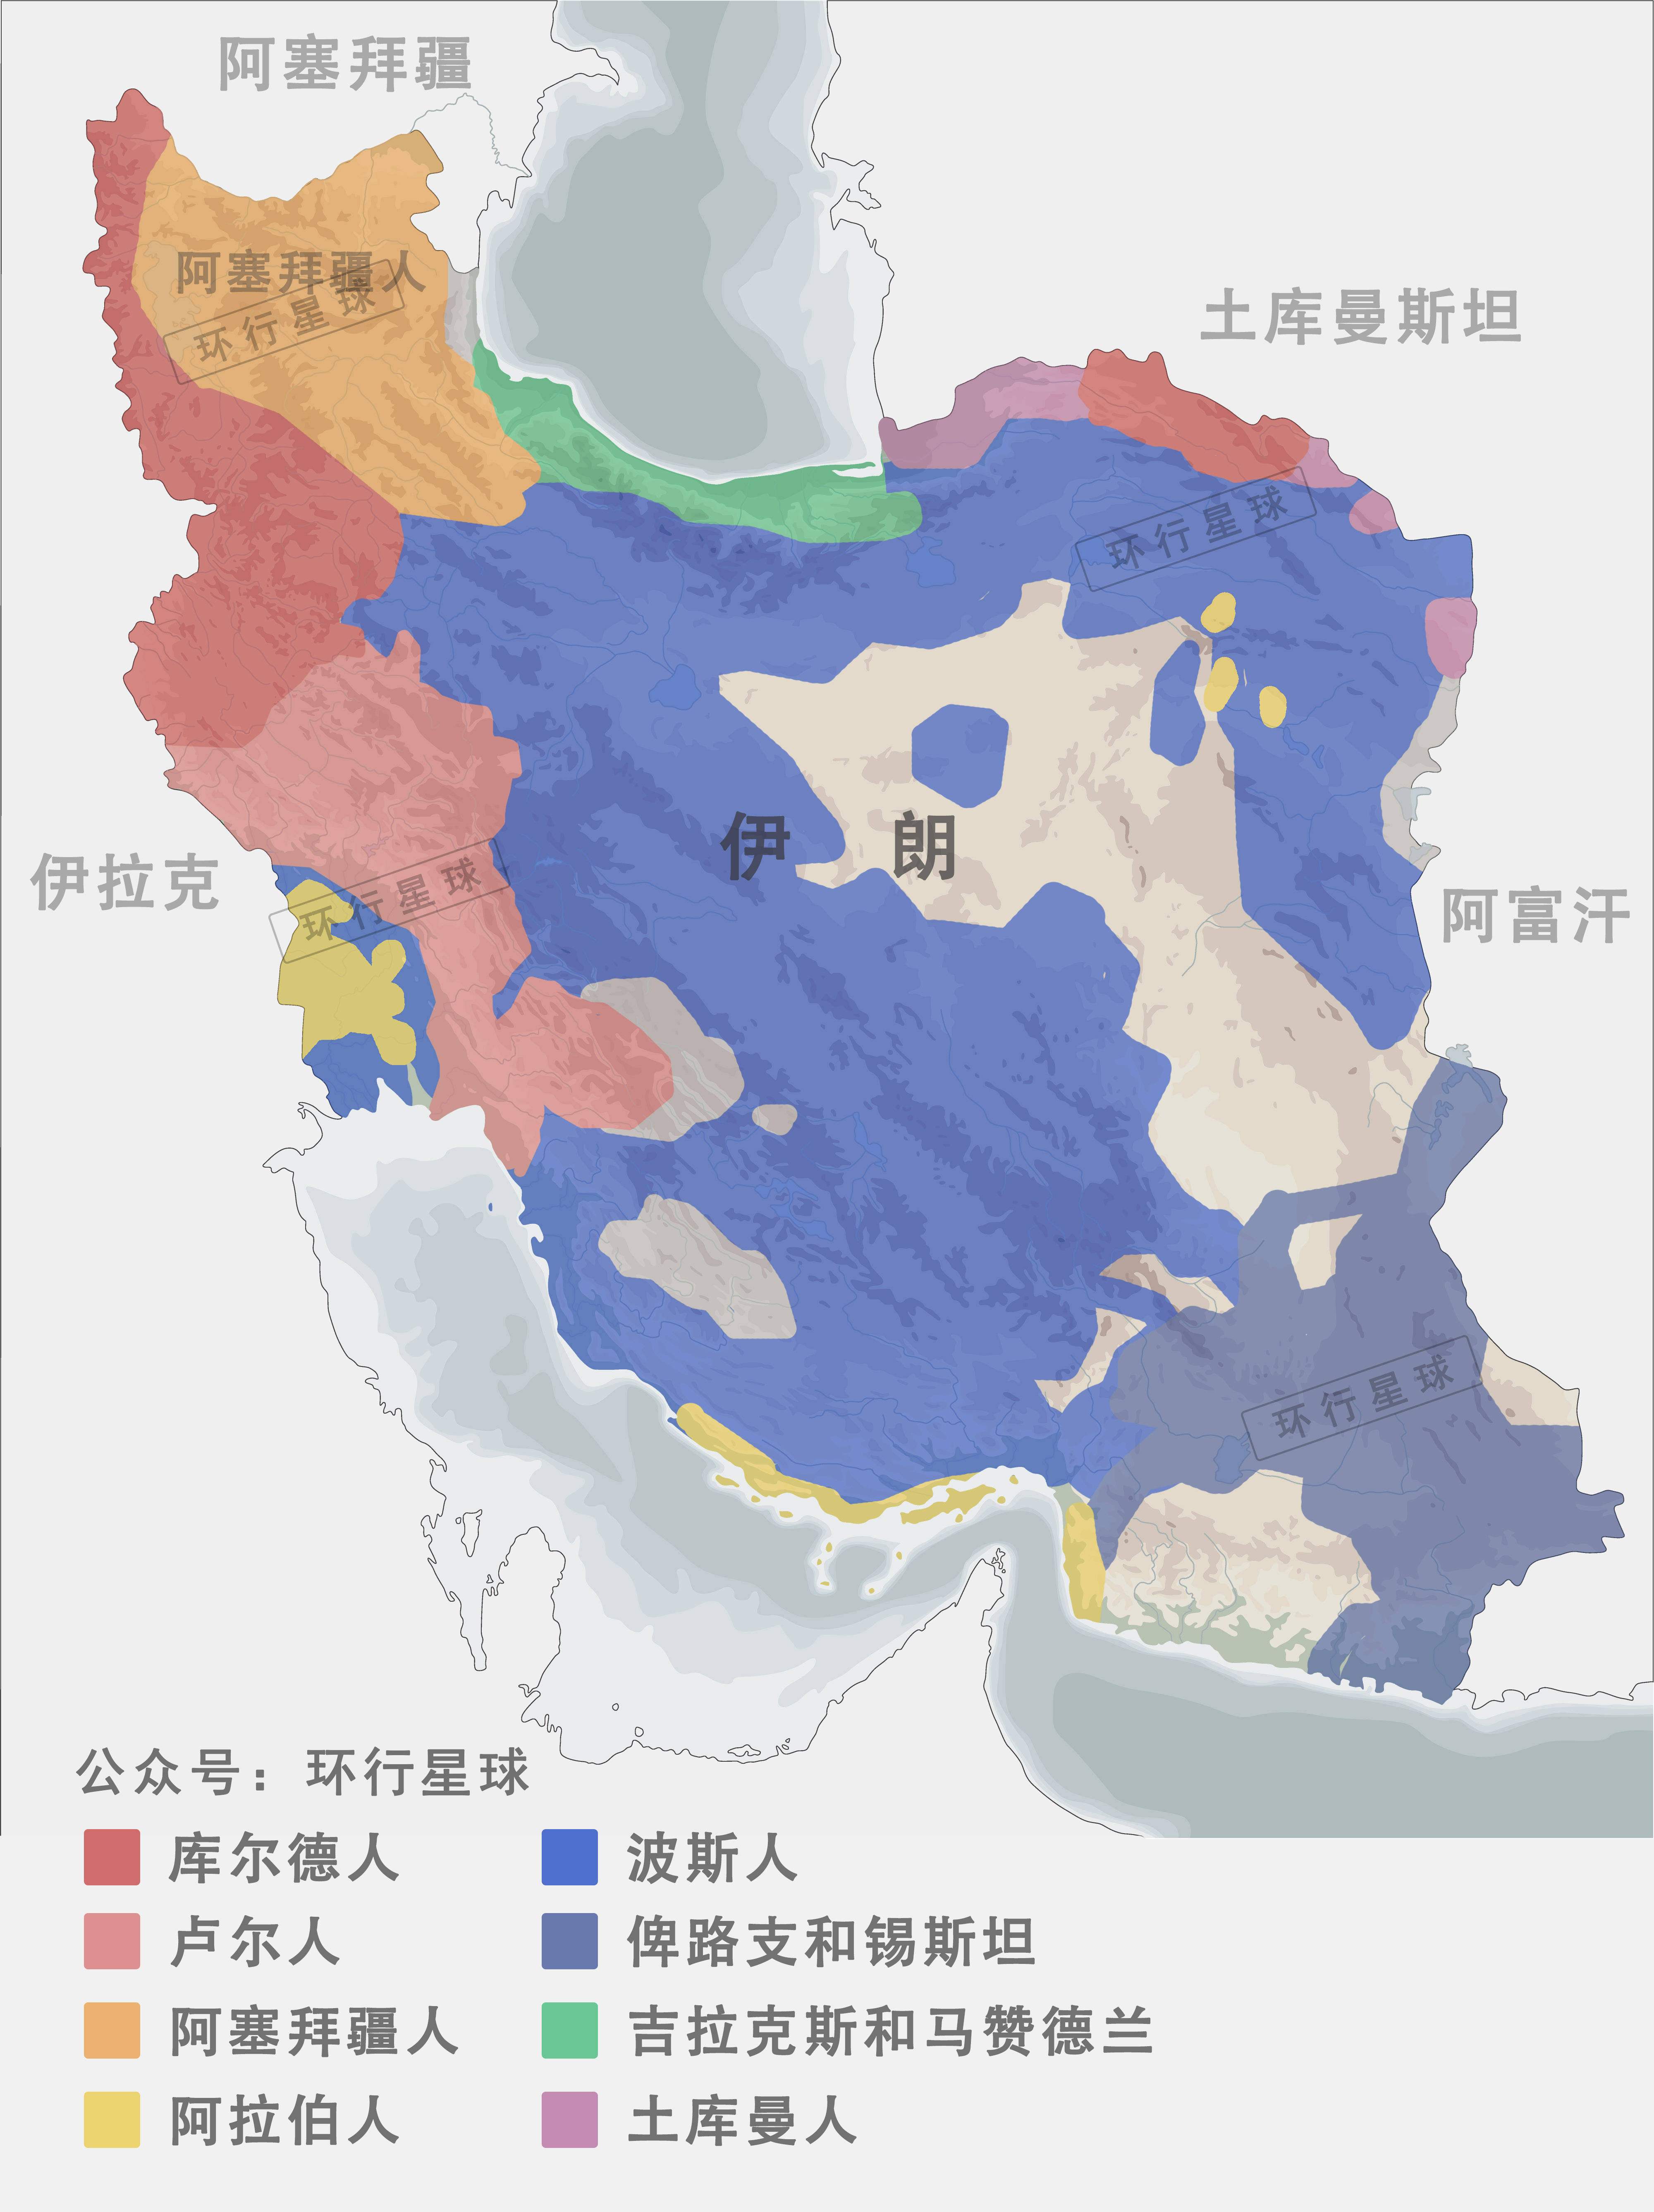 萨法维王朝地图图片